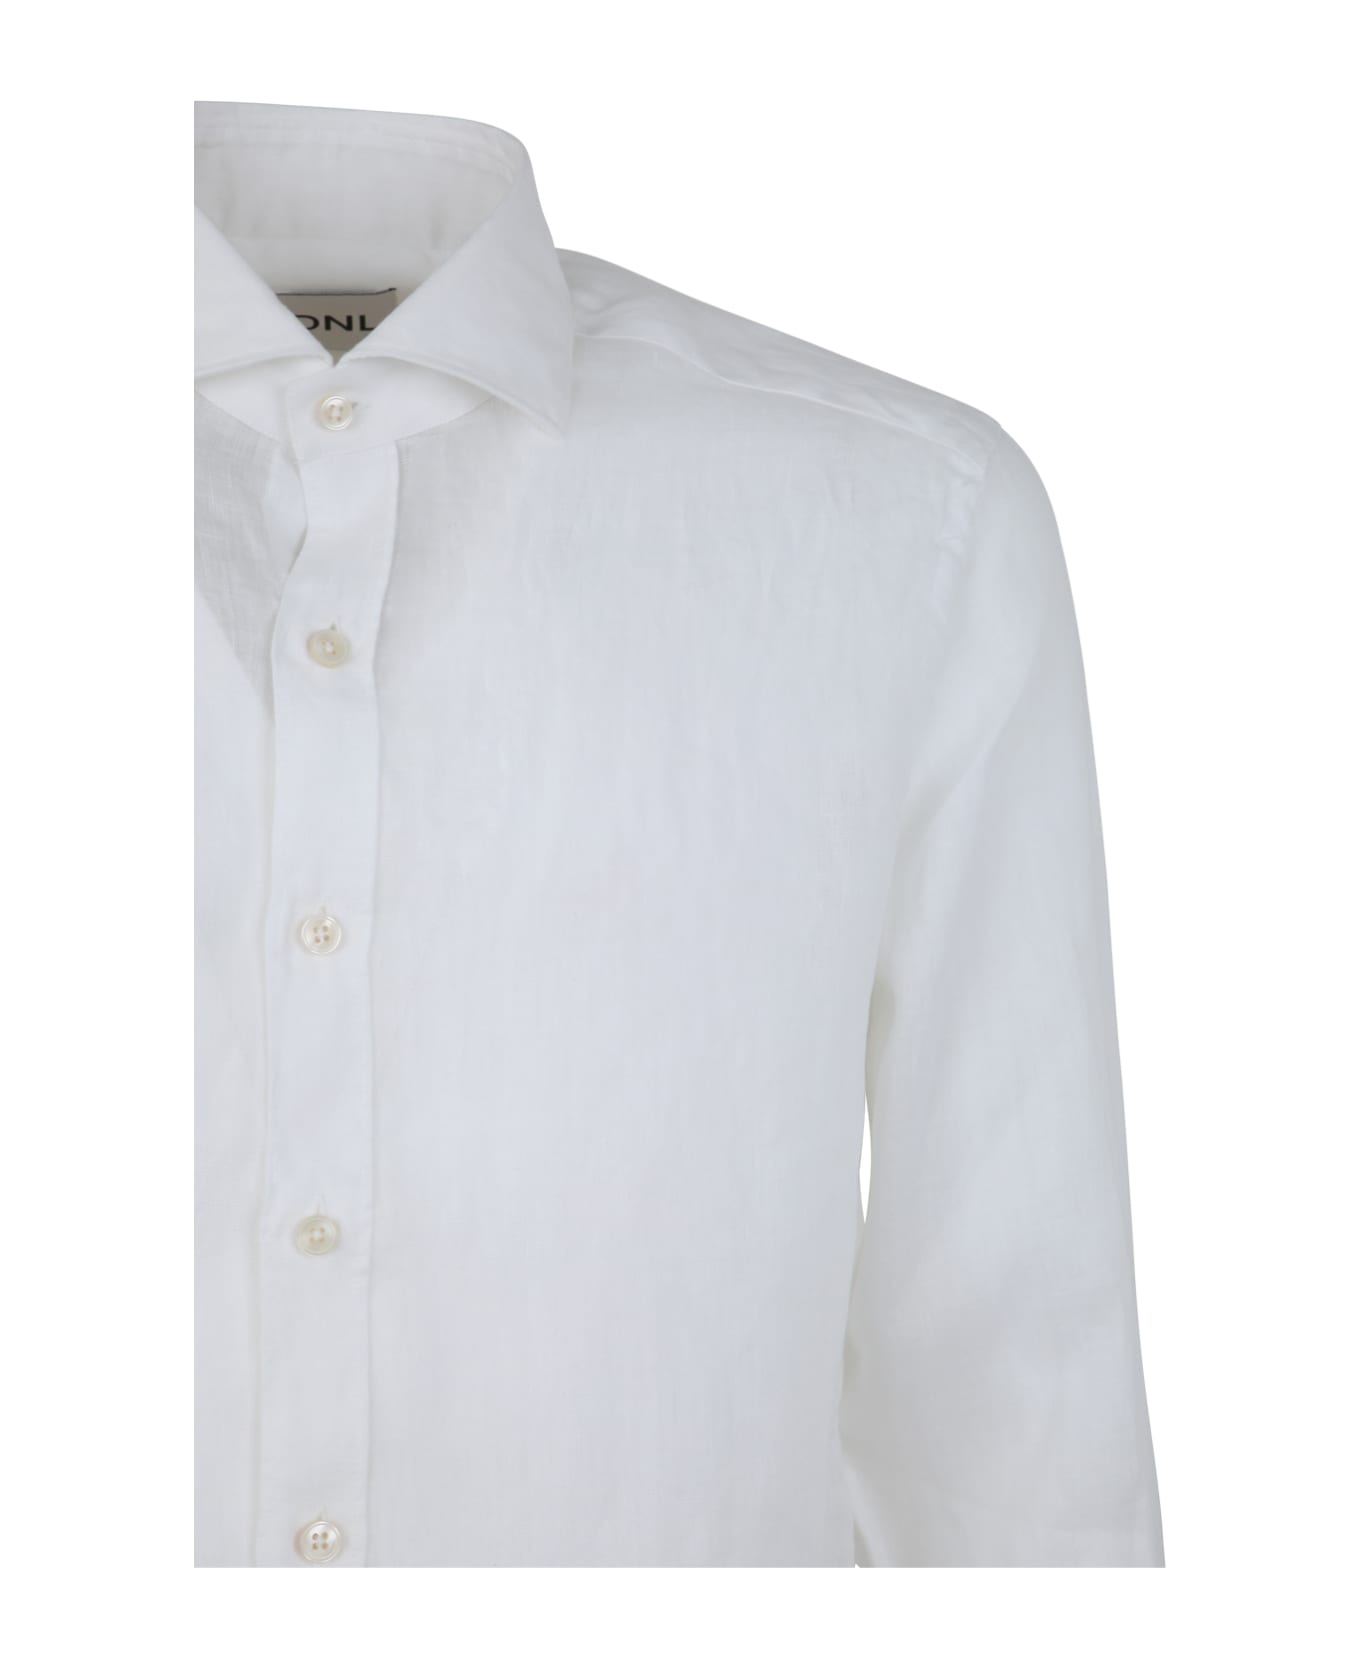 DNL Linen Classic Shirt - White